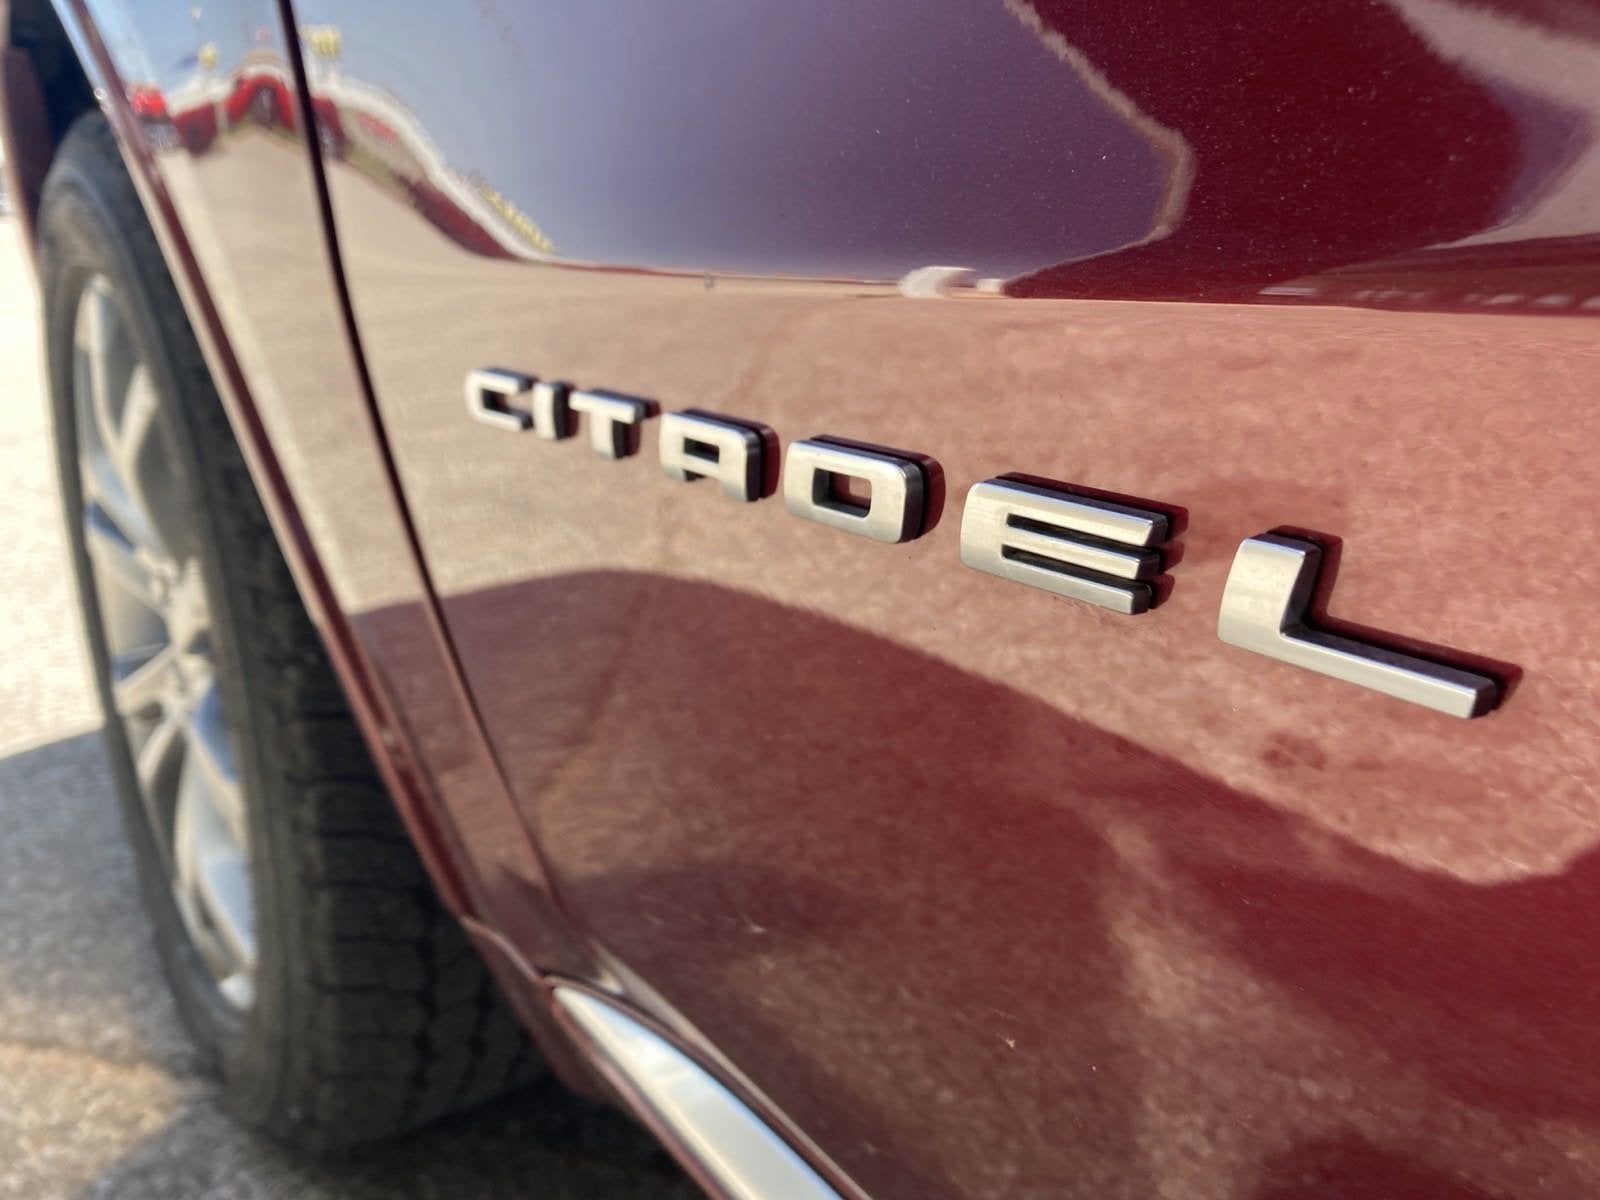 2017 Dodge Durango Citadel Anodized Platinum